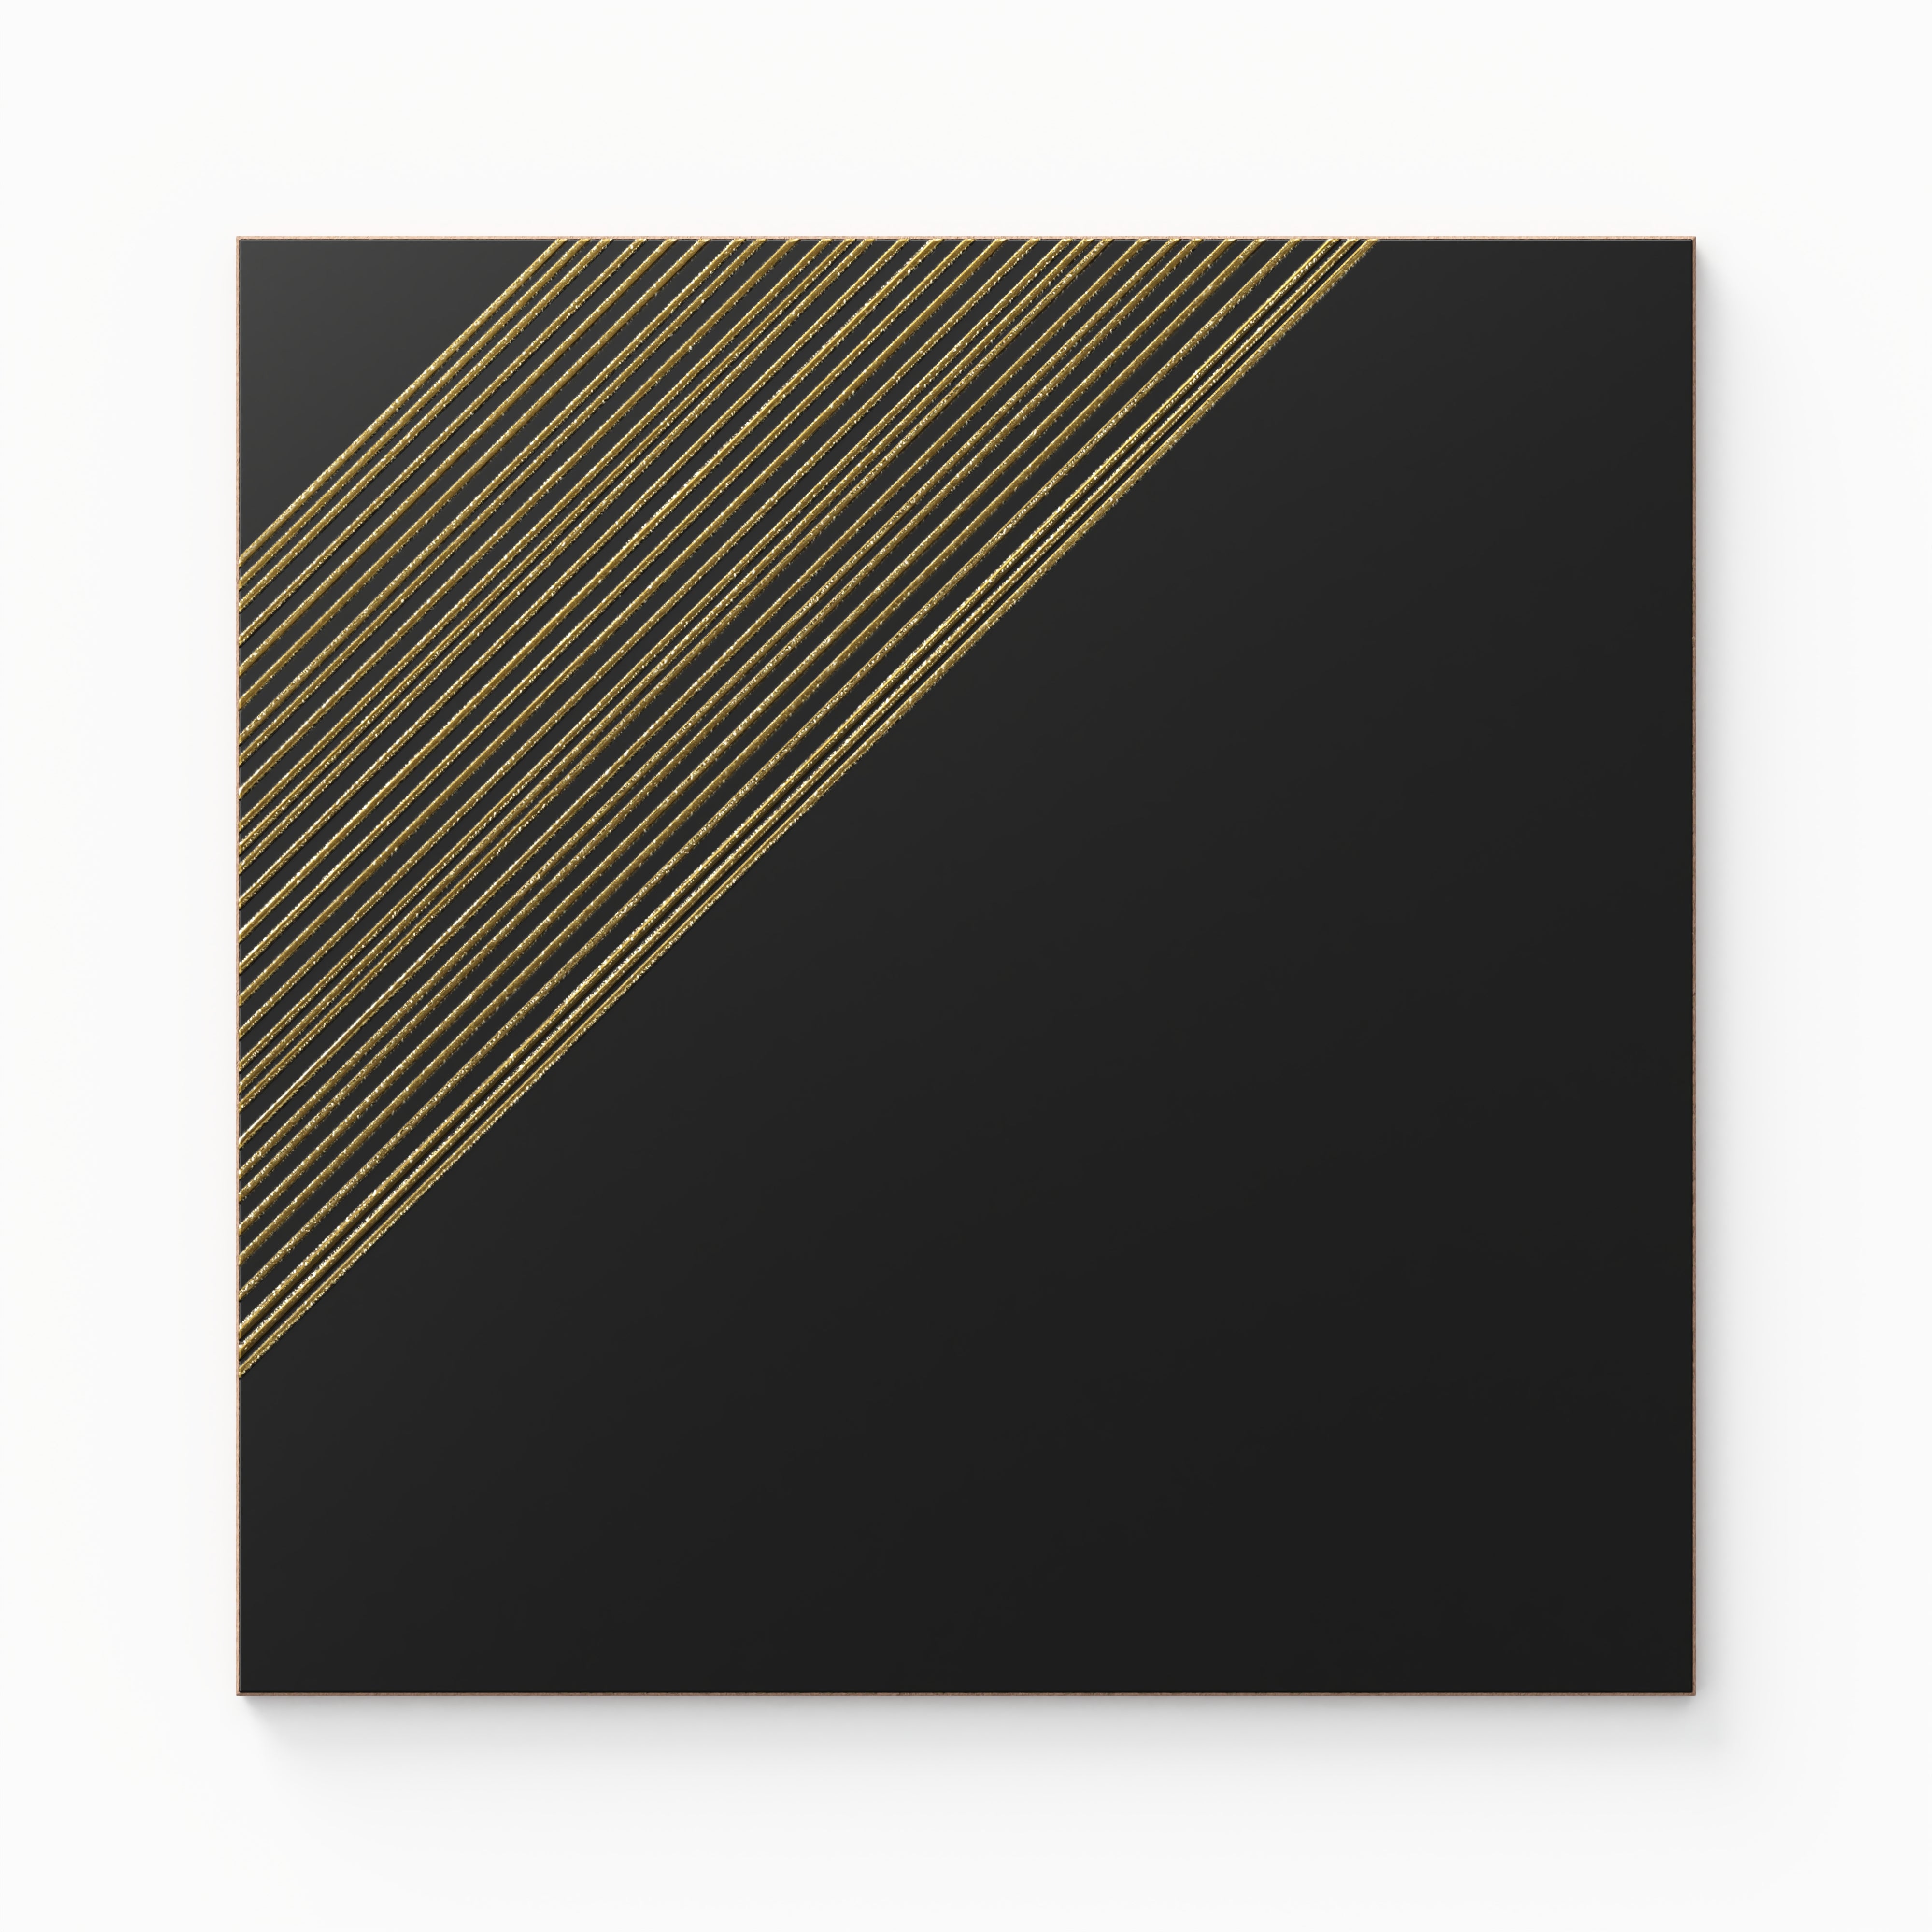 Estelle 12x12 Satin Ceramic Tile in Deco 3 Black Gold Sample